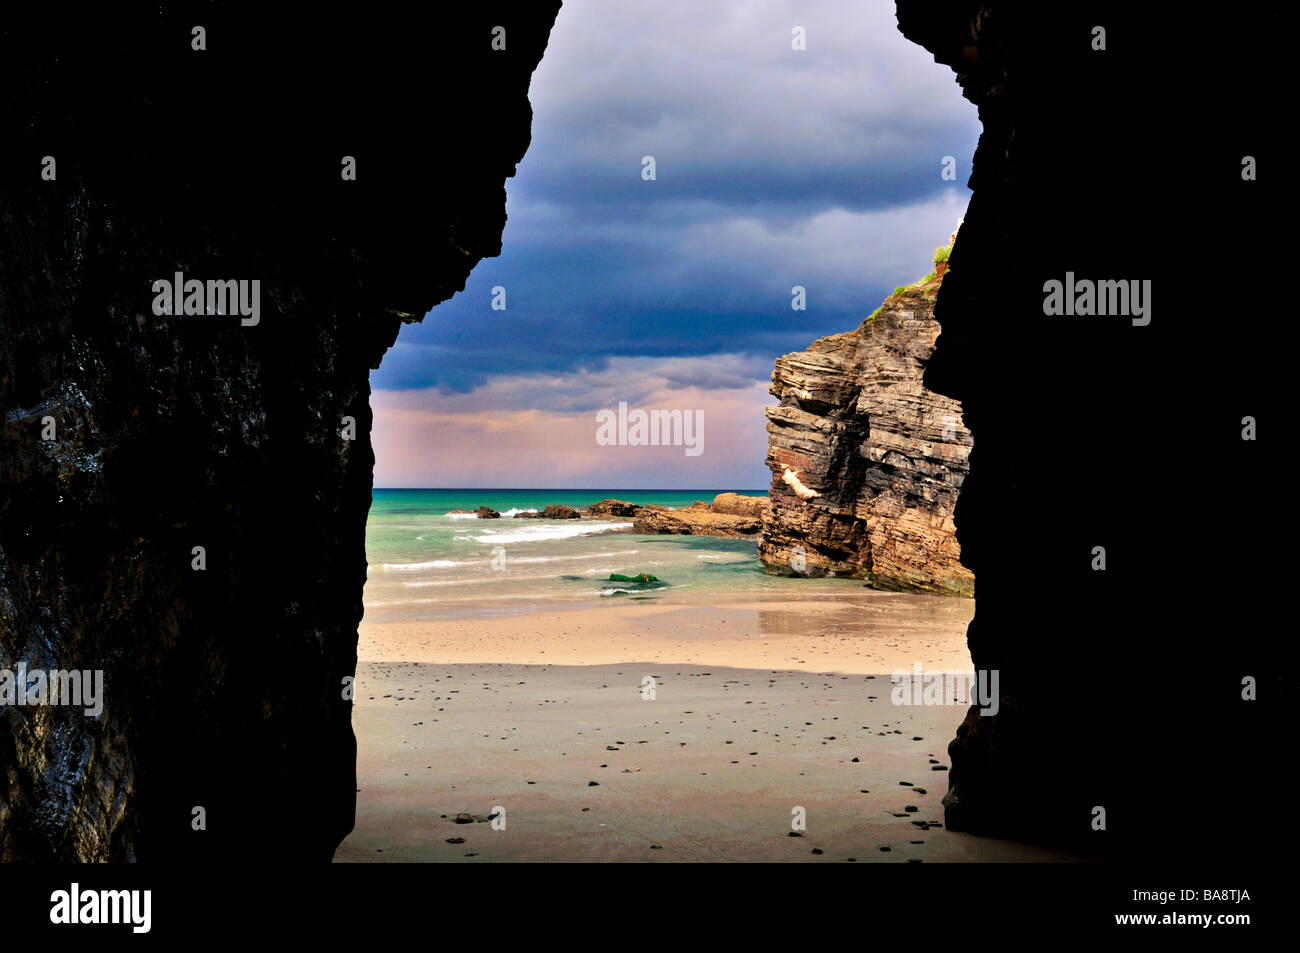 Spagna Galizia: arco in pietra e grotta presso la spiaggia "Praia come Catedrais' Foto Stock